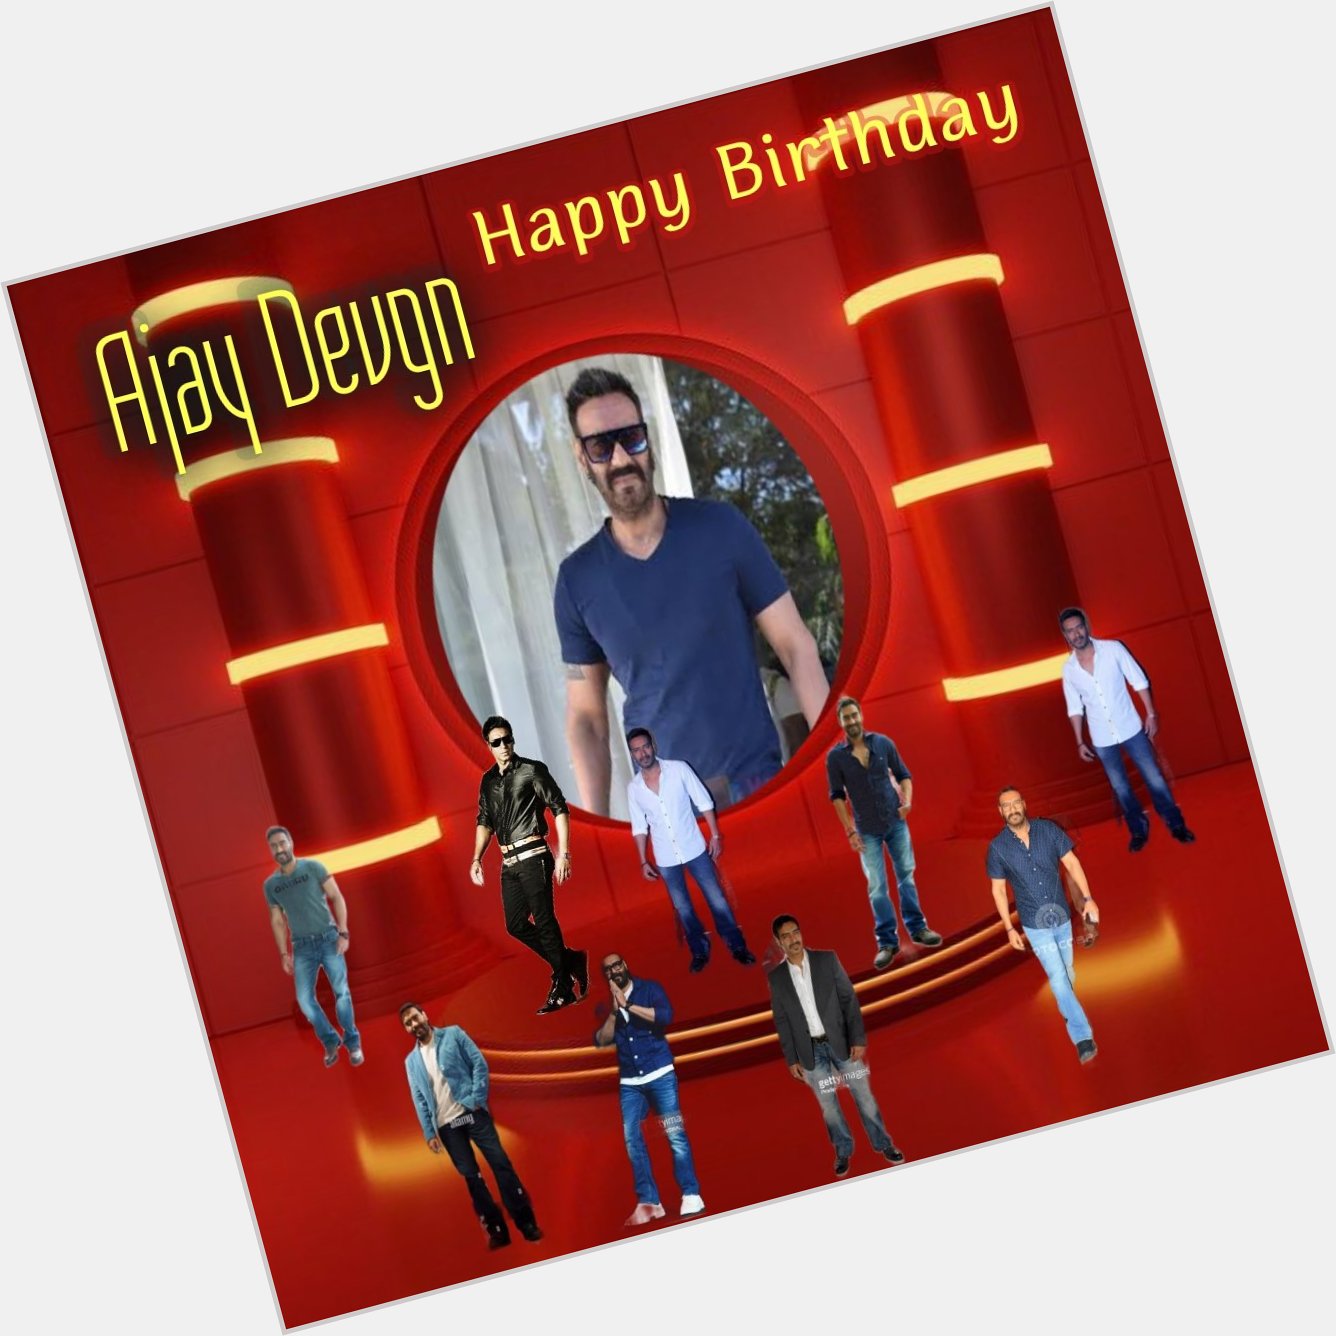 Happy Birthday
Ajay Devgn    